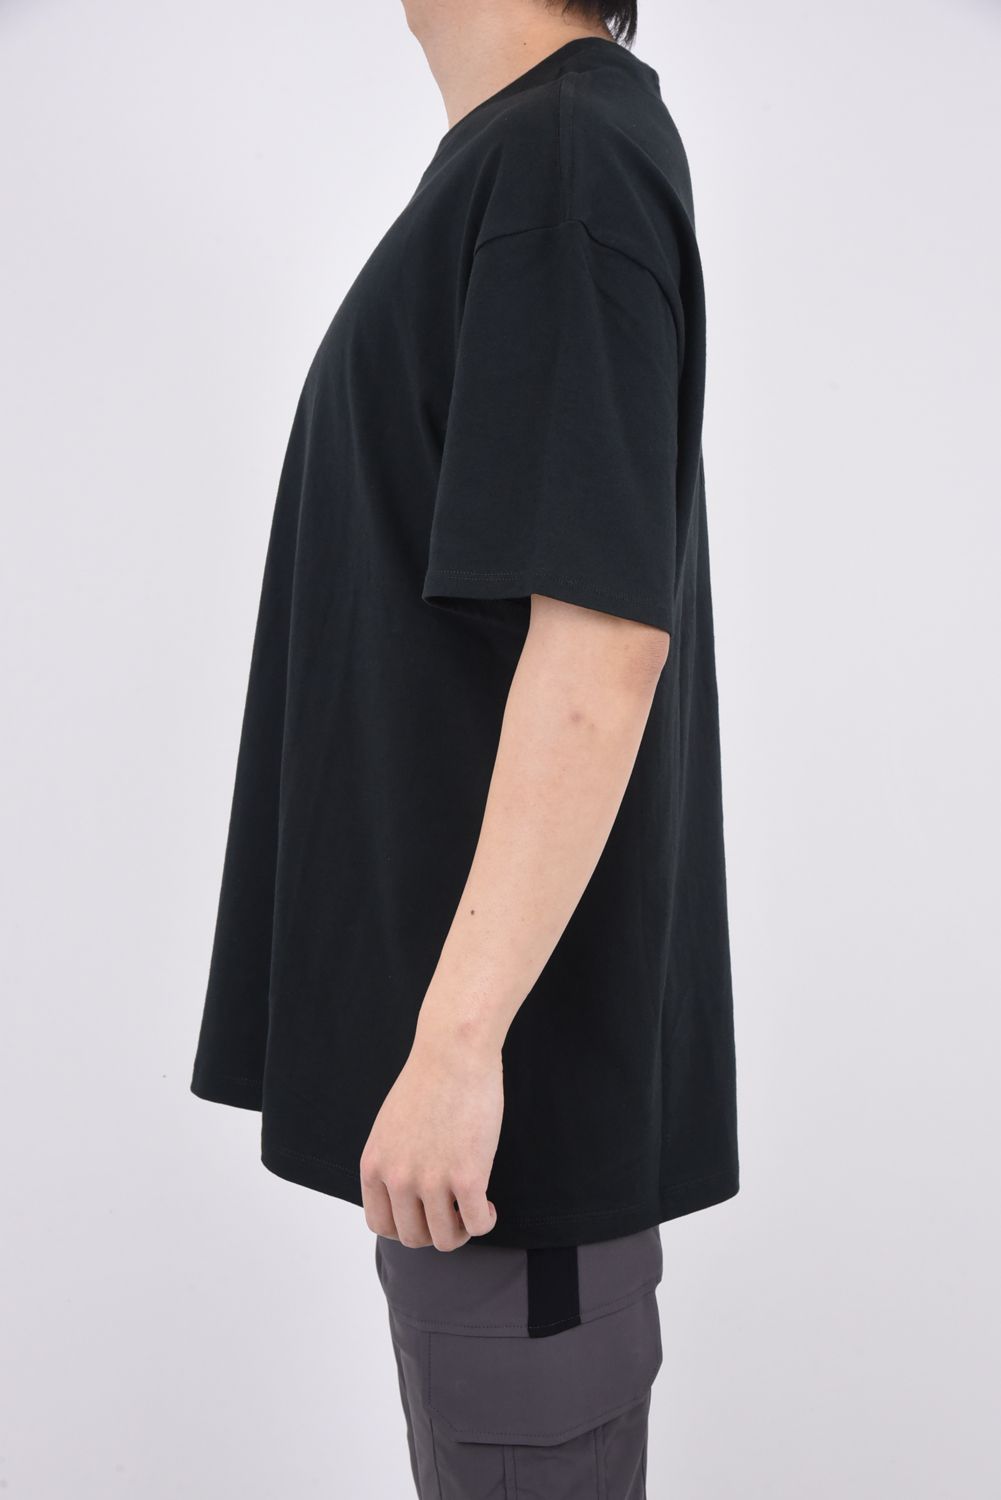 FOG エッセンシャルズ FG7Cロゴ 半袖 Tシャツ ブラック XL